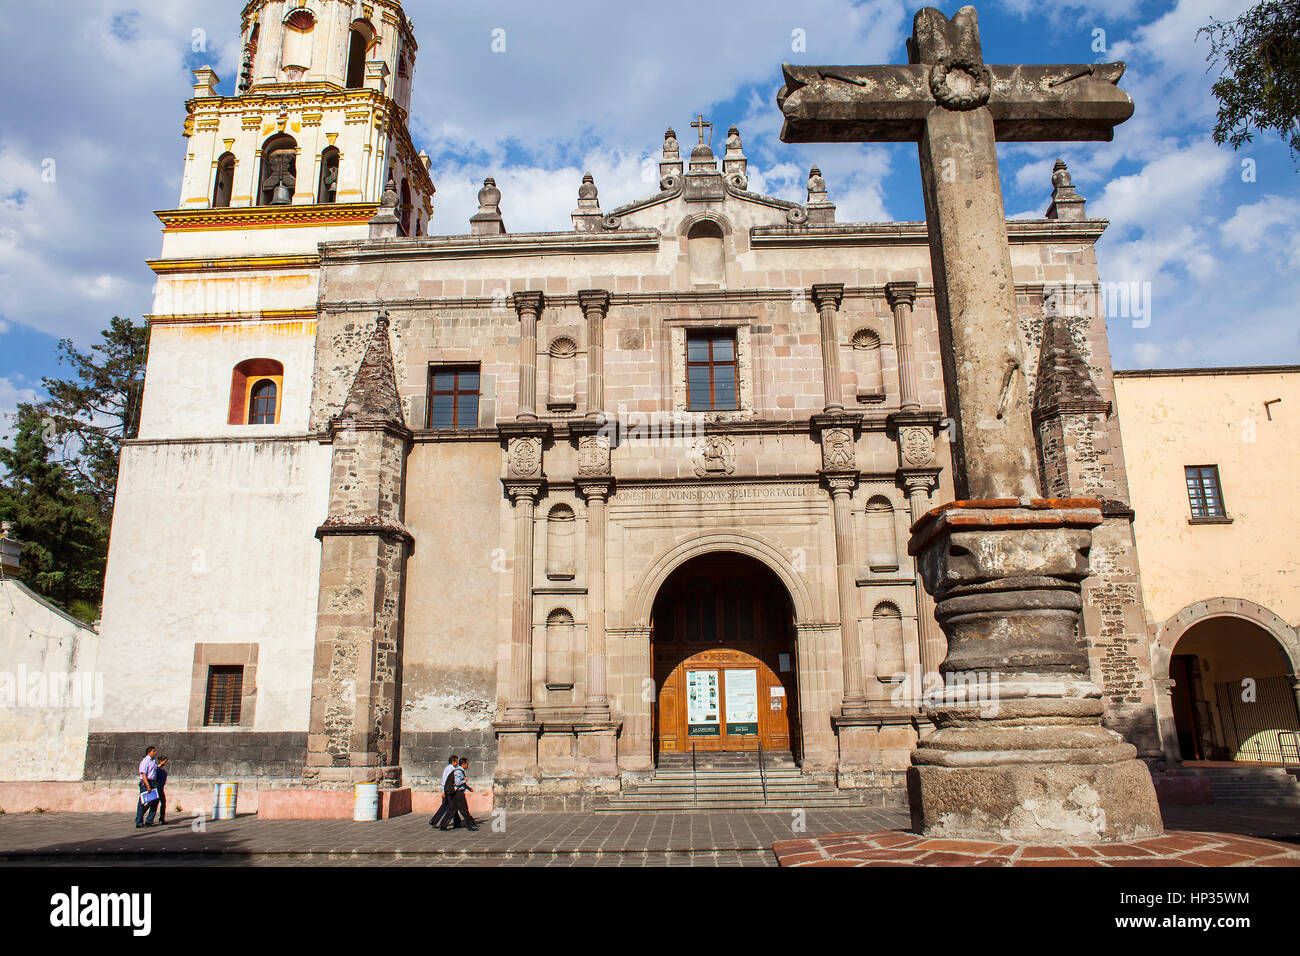 Convento de San Juan Bautista, Coyoacan, Mexico City, Mexico Stock Photo -  Alamy